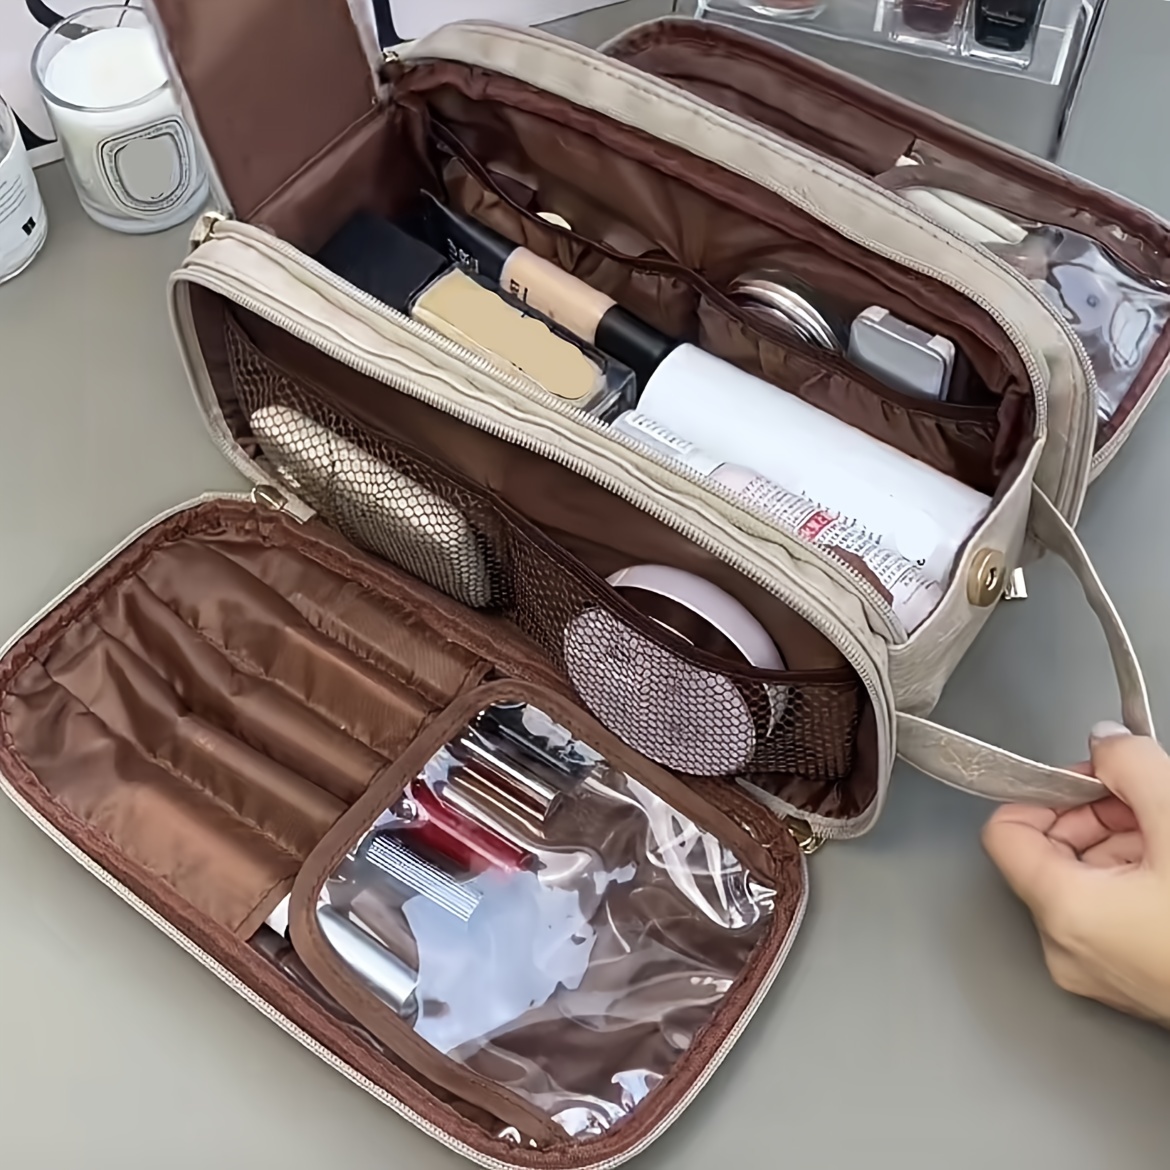 

Grande Capacité Comestic Bag, Sac De Maquillage Portable Imperméable, Organisateur De Toilette Et Accessoires De Voyage